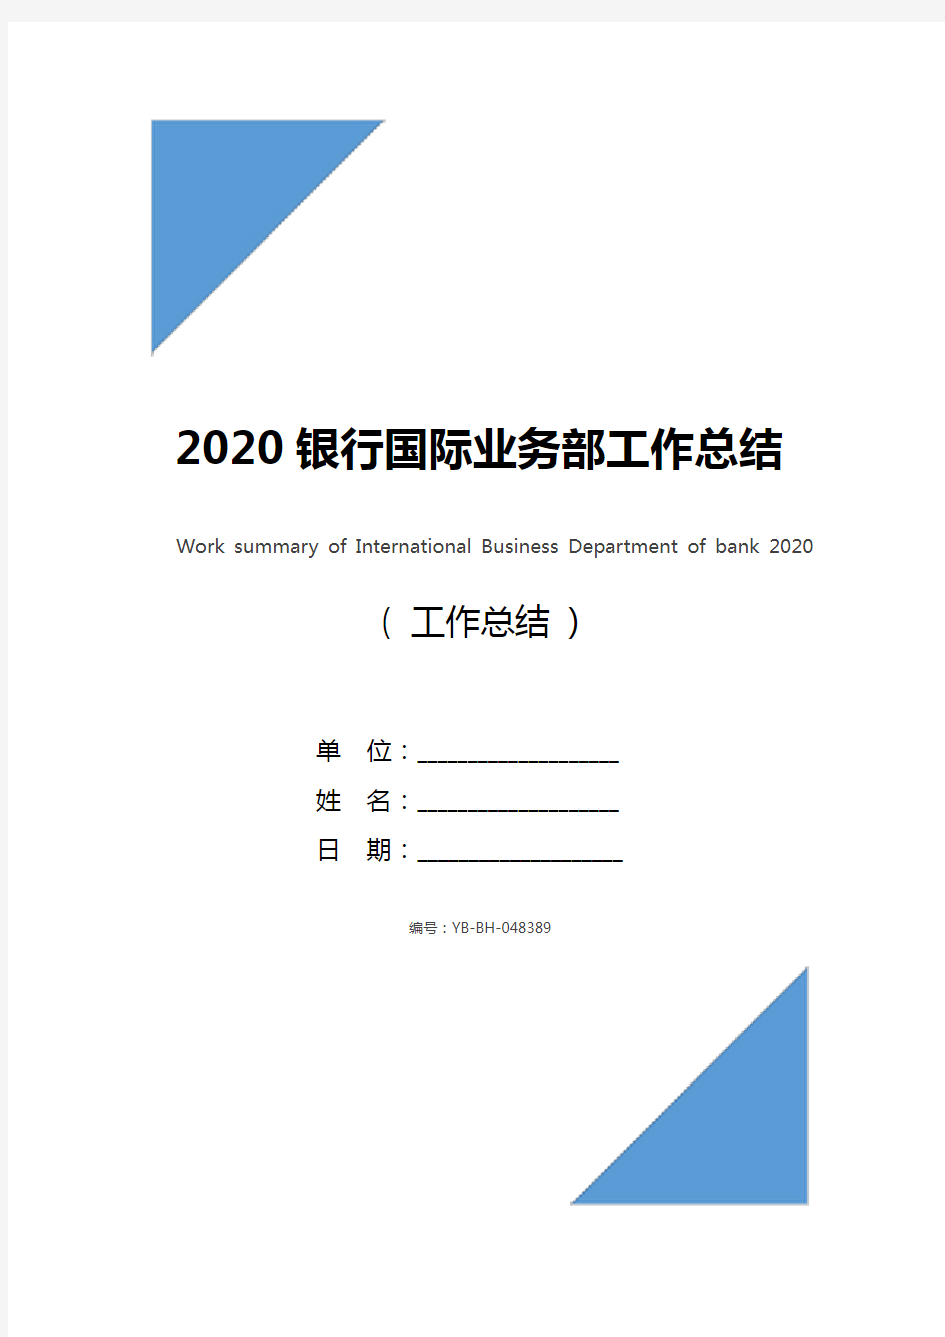 2020银行国际业务部工作总结